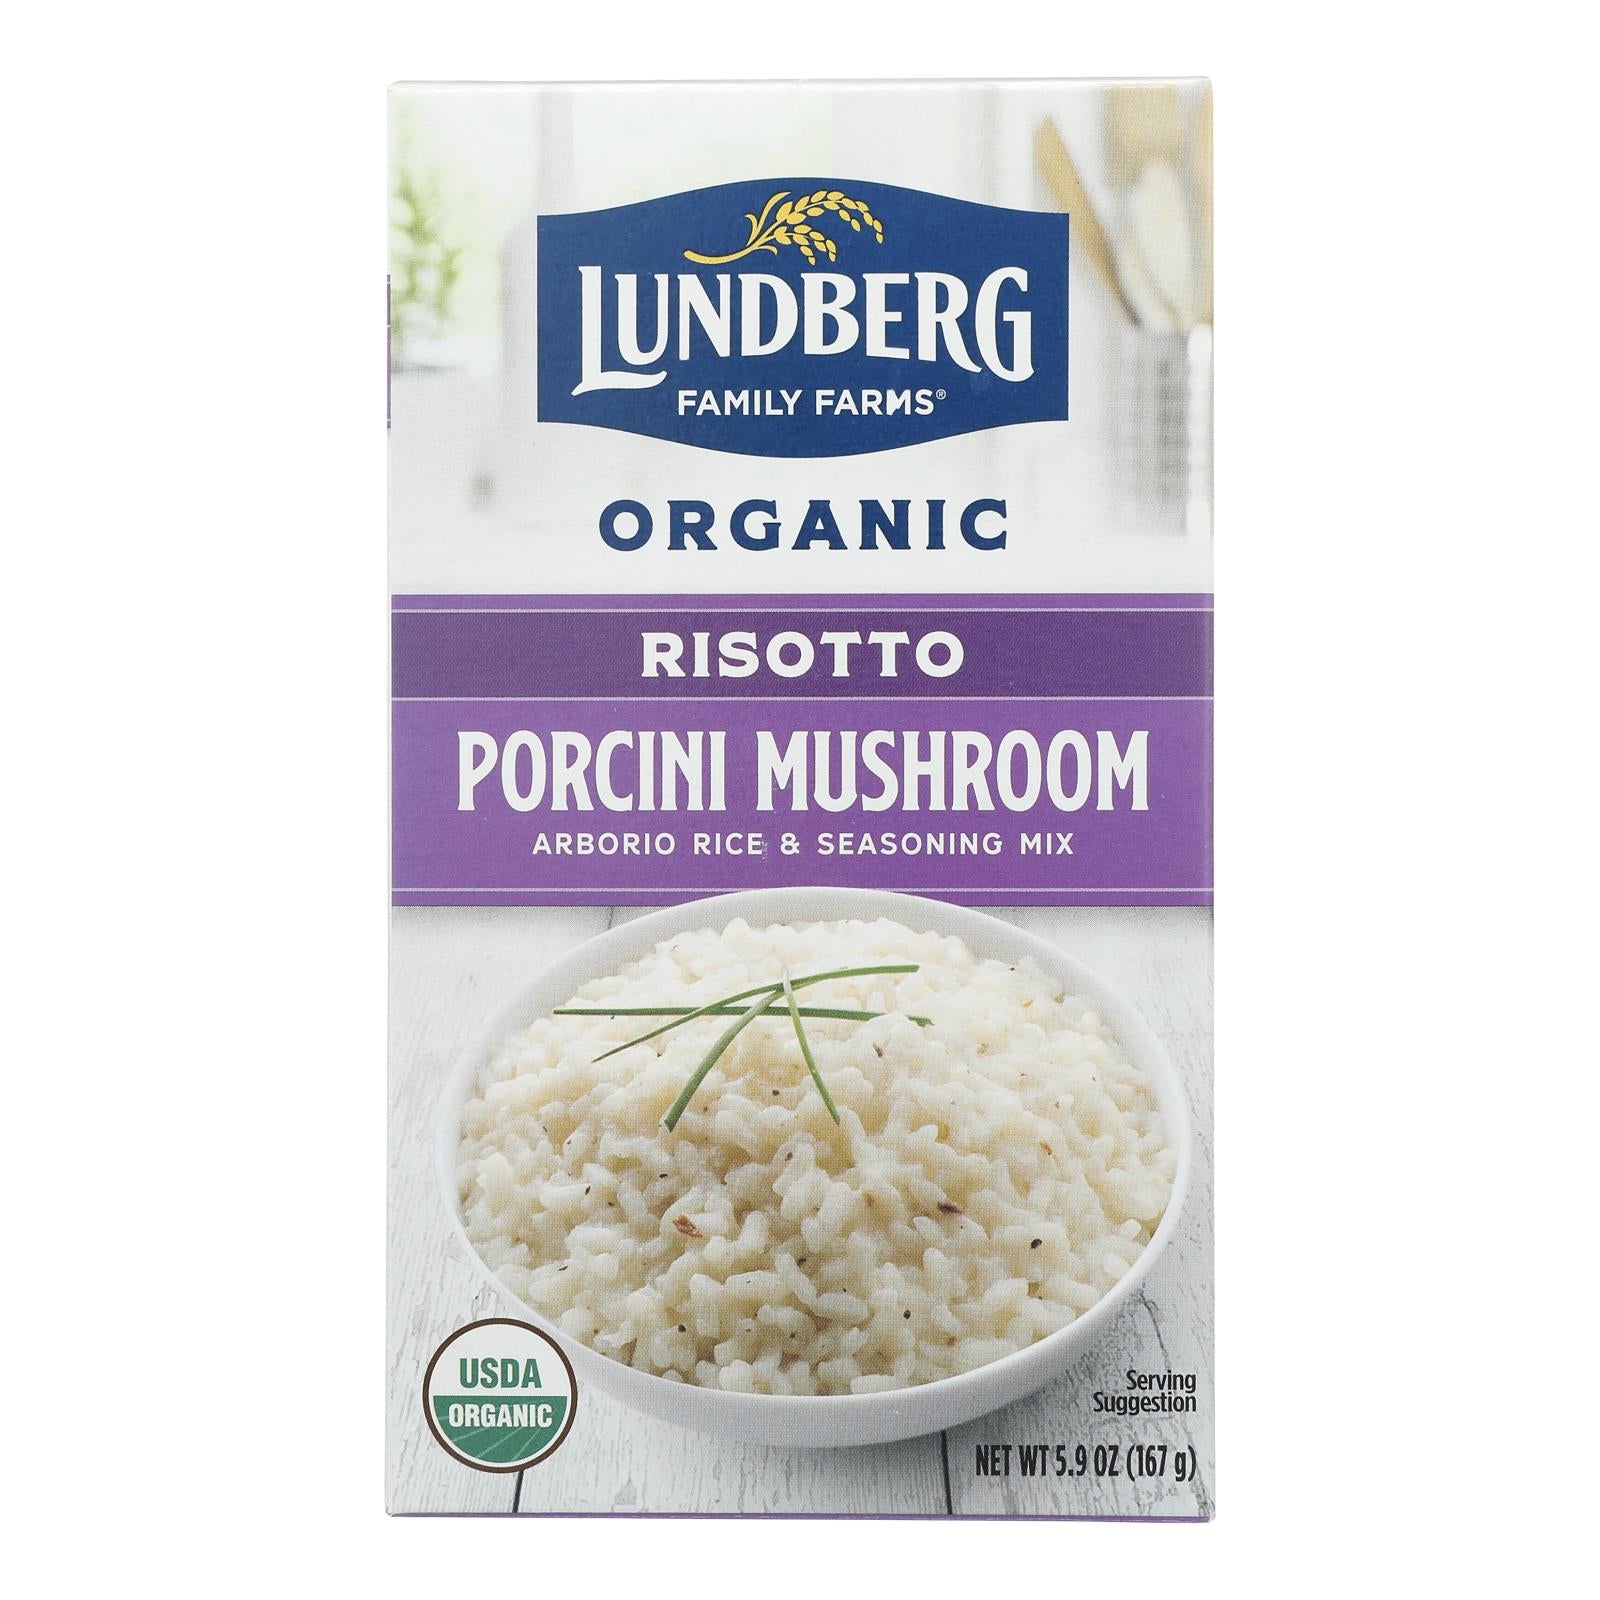 Lundberg Family Farms Risotto Porcini Mushroom - Case of 6 - 5.9 oz.